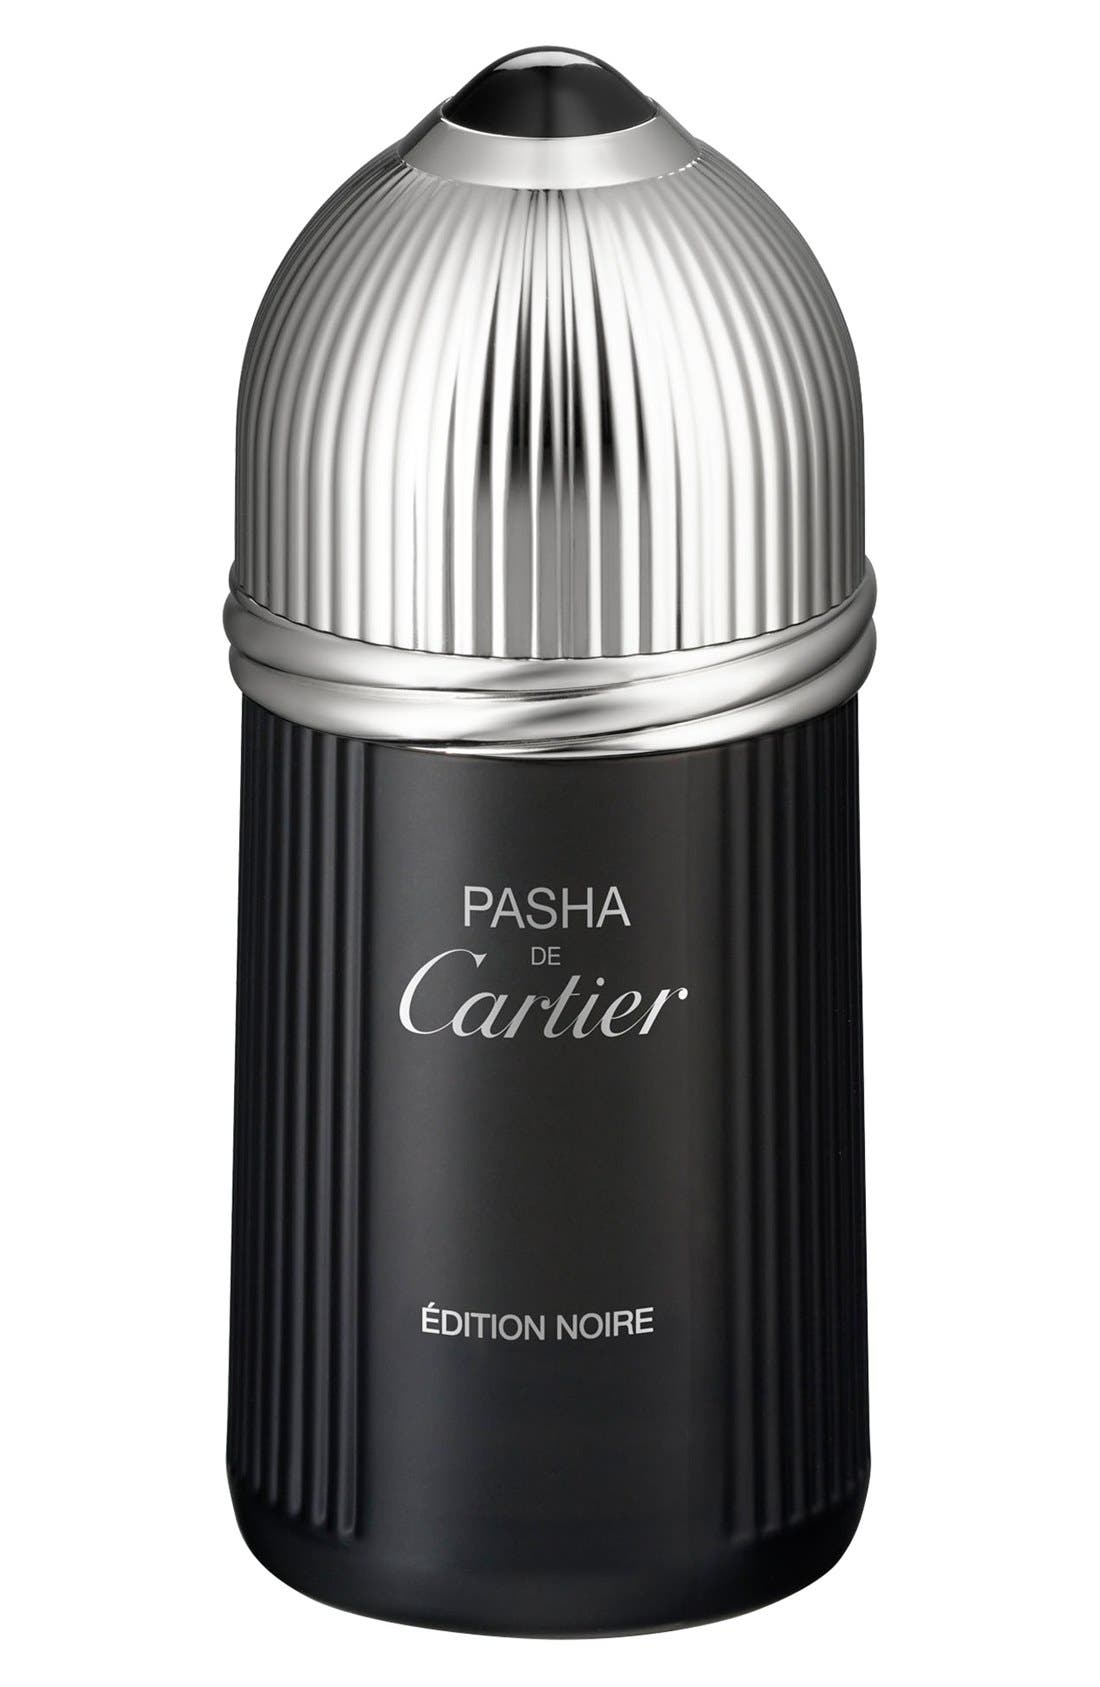 Pasha de Cartier Edition Noire Eau de Toilette at Nordstrom, Size 3.3 Oz